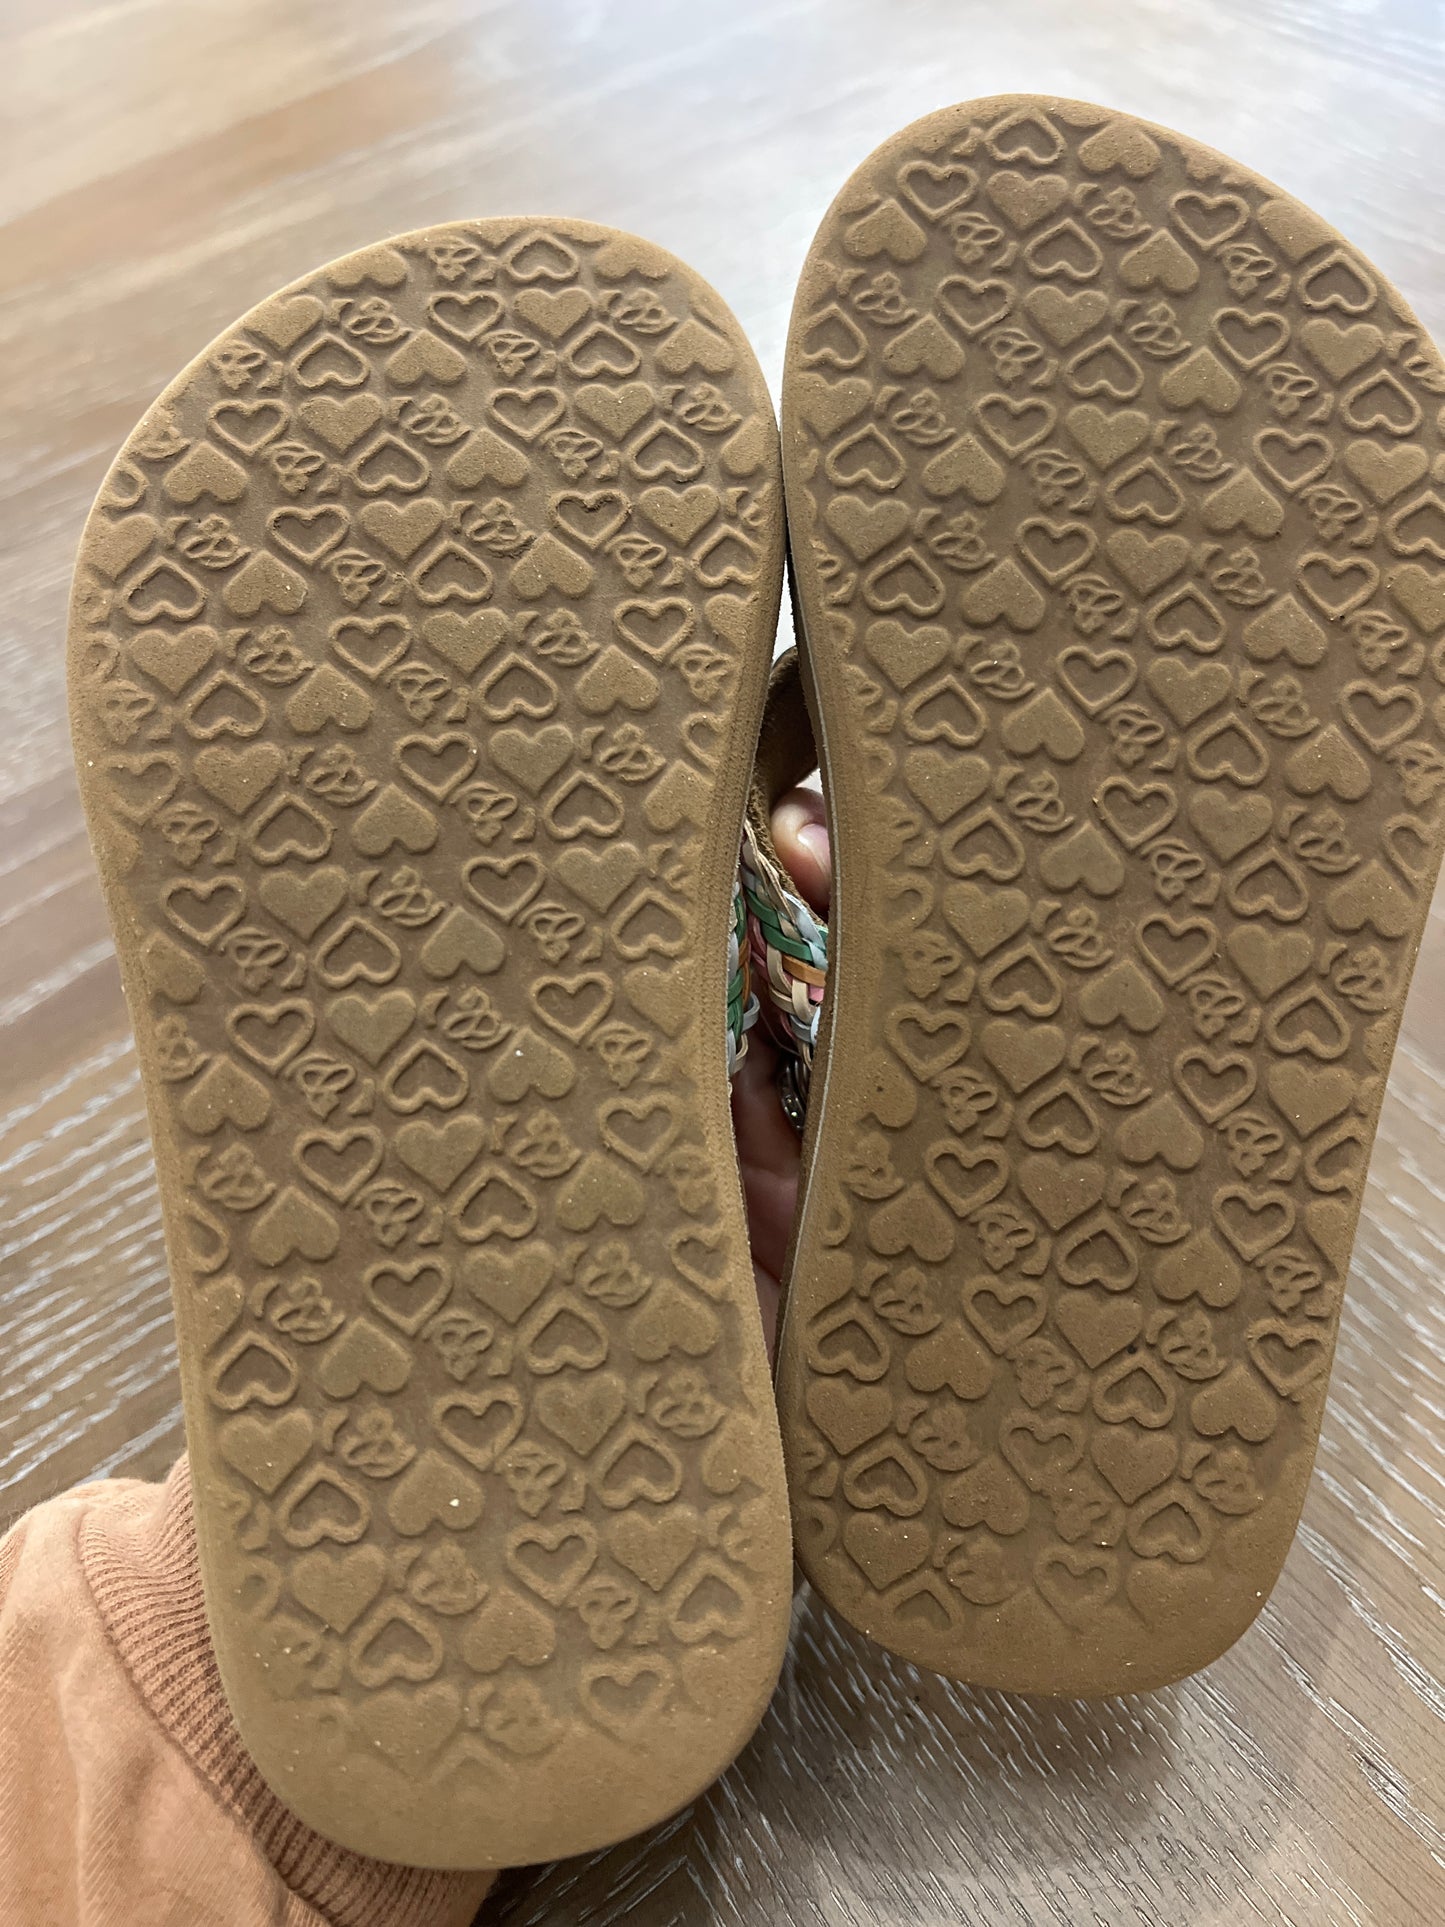 Cobian sandals size 12